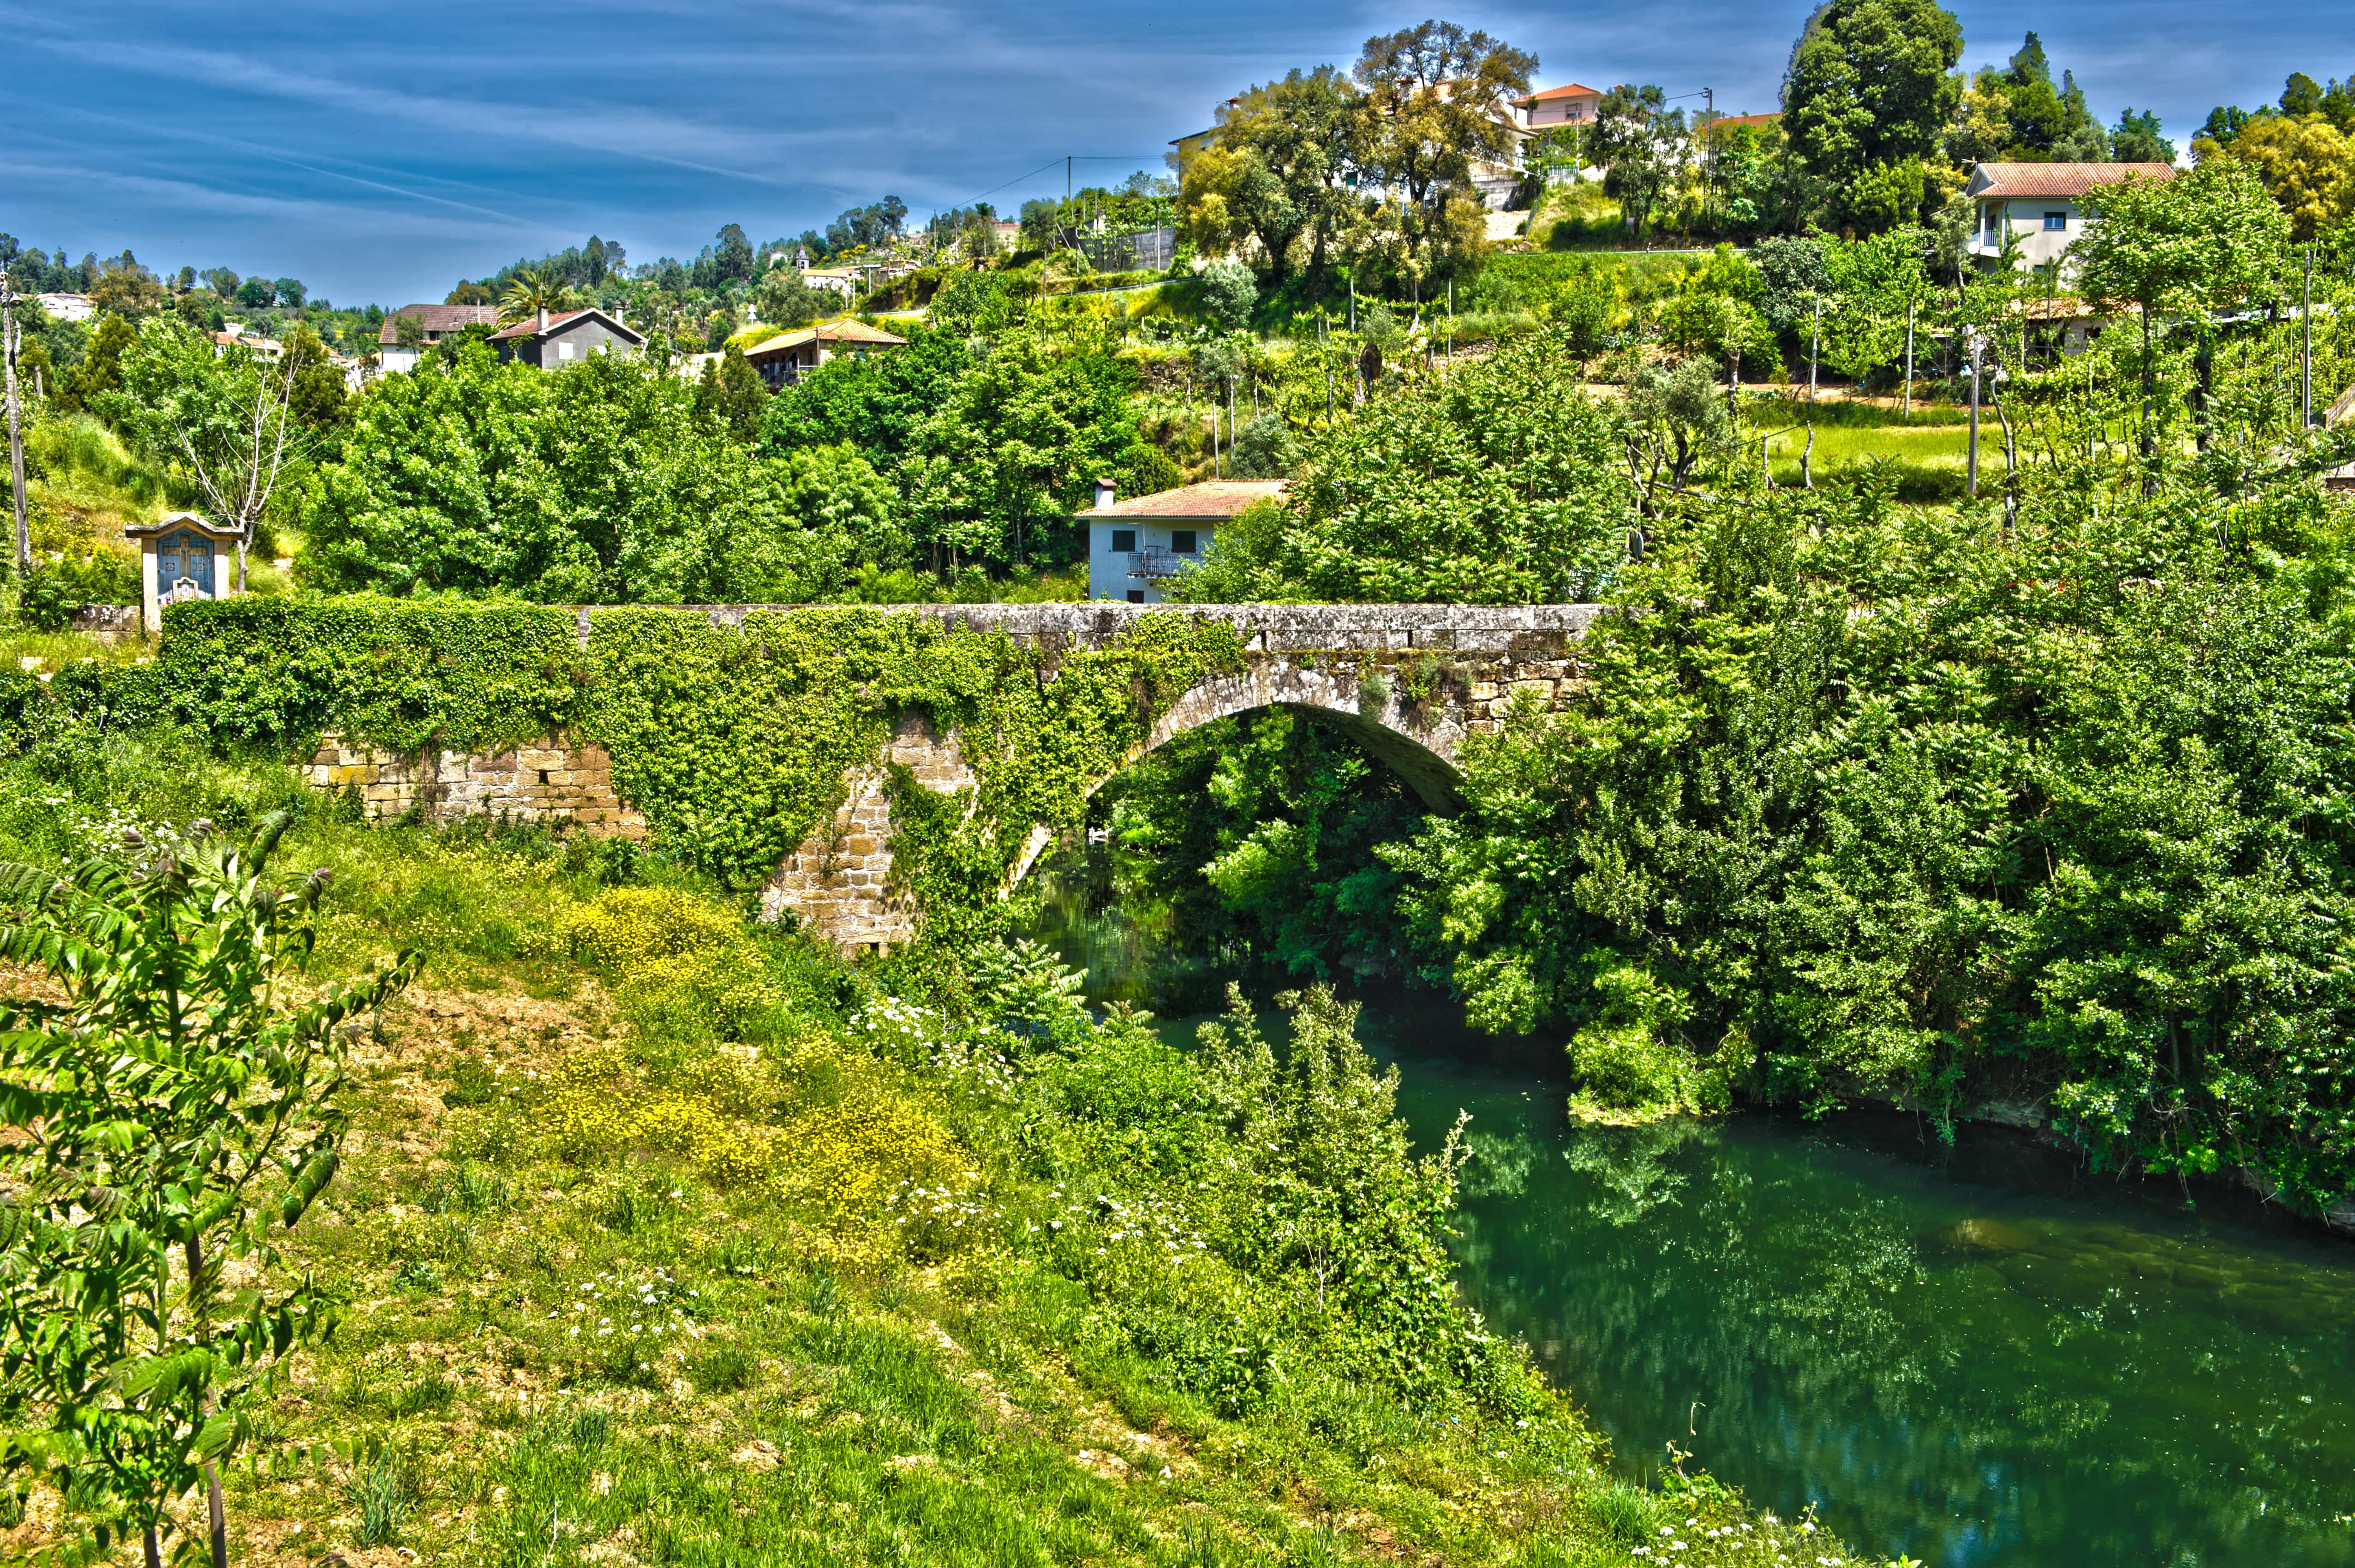 Ponte antiga, que atravessa o Rio Ouro, cujo tabuleiro está assente sobre um arco de volta perfeita 